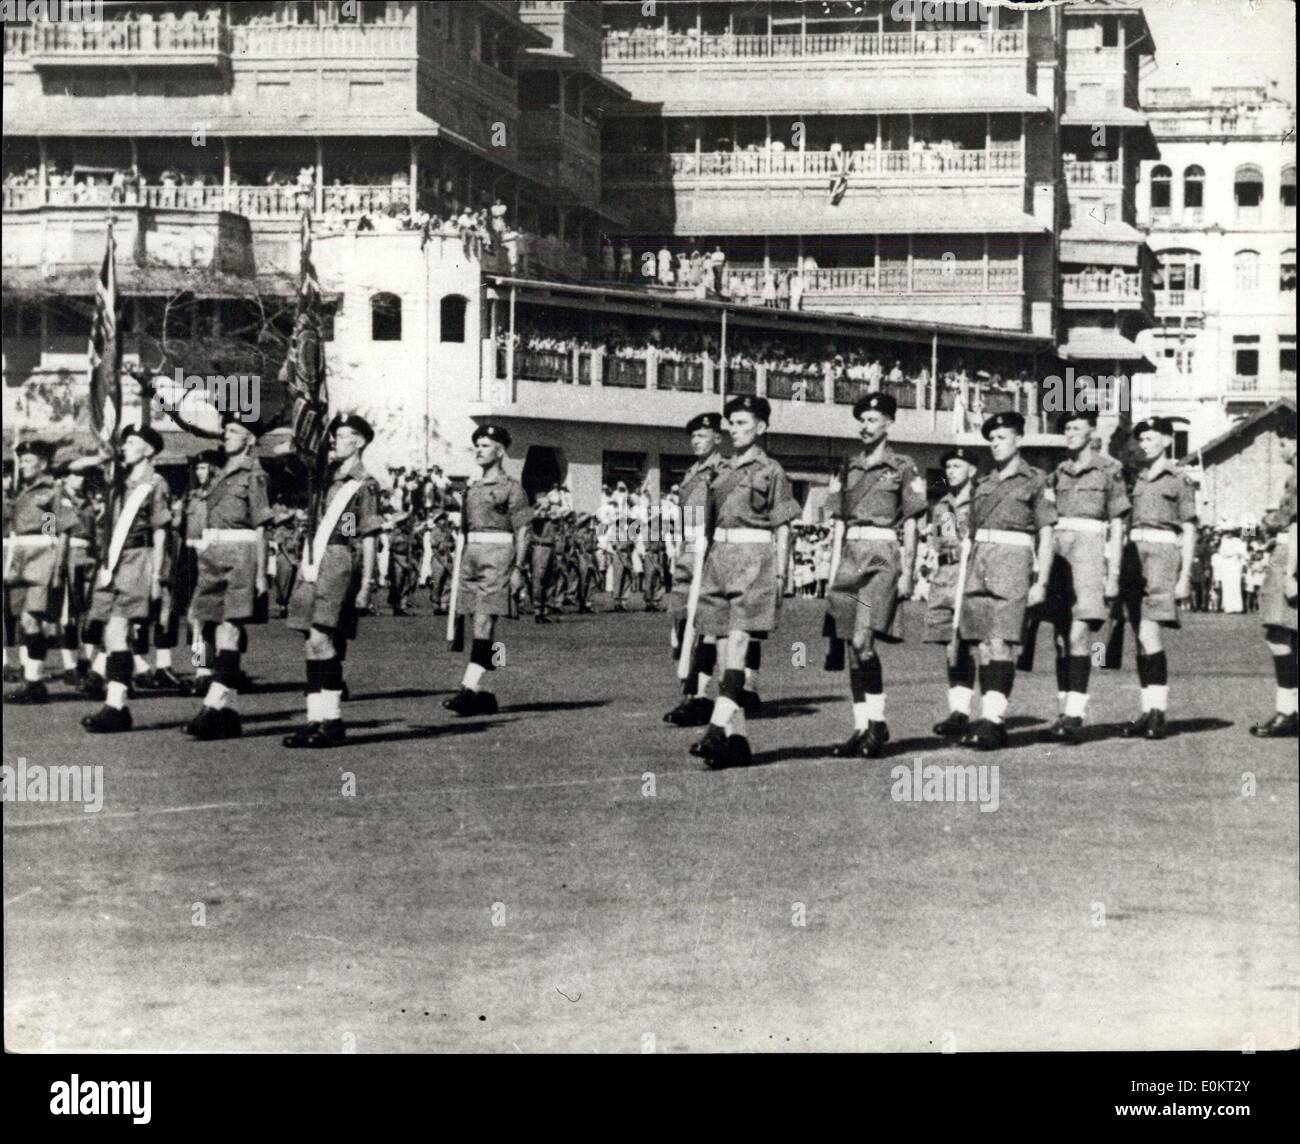 04 mars 1948 - adieu de l'Inde  Armée britannique : avec des groupes, des bannières et ''Auld Lang Syne', l'Inde a fait un adieu en cérémonie à l'Armée britannique. Quand des hommes du Bataillon de l'infanterie légère Somerset se sont embarqués pour la Grande-Bretagne dans l'Express de 22,000 tonnes d'Australie dernier Sataday. Une foule d'Indiens de 20 à 30 personnes de profondeur ont applaudi,  56 83 Banque D'Images